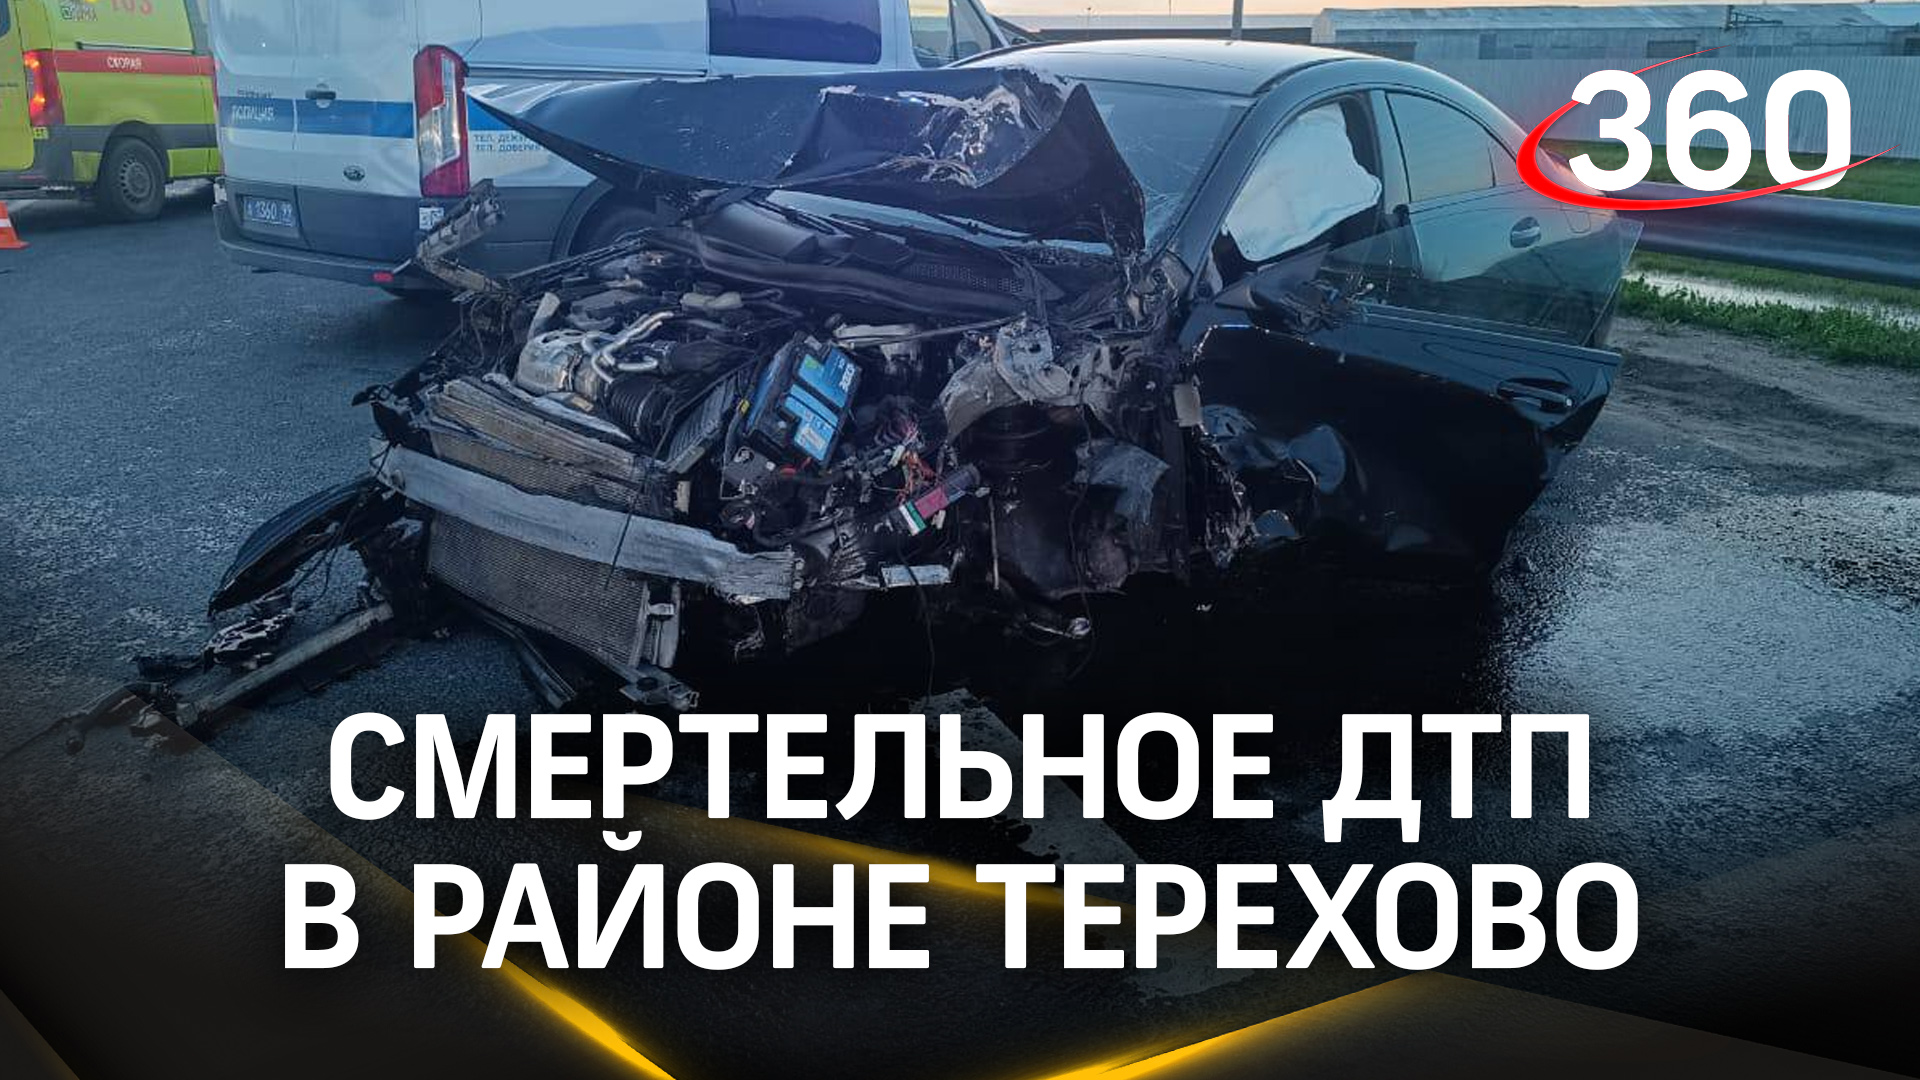 Нетрезвый водитель влетел в легковушку на Калужском шоссе: есть погибшие